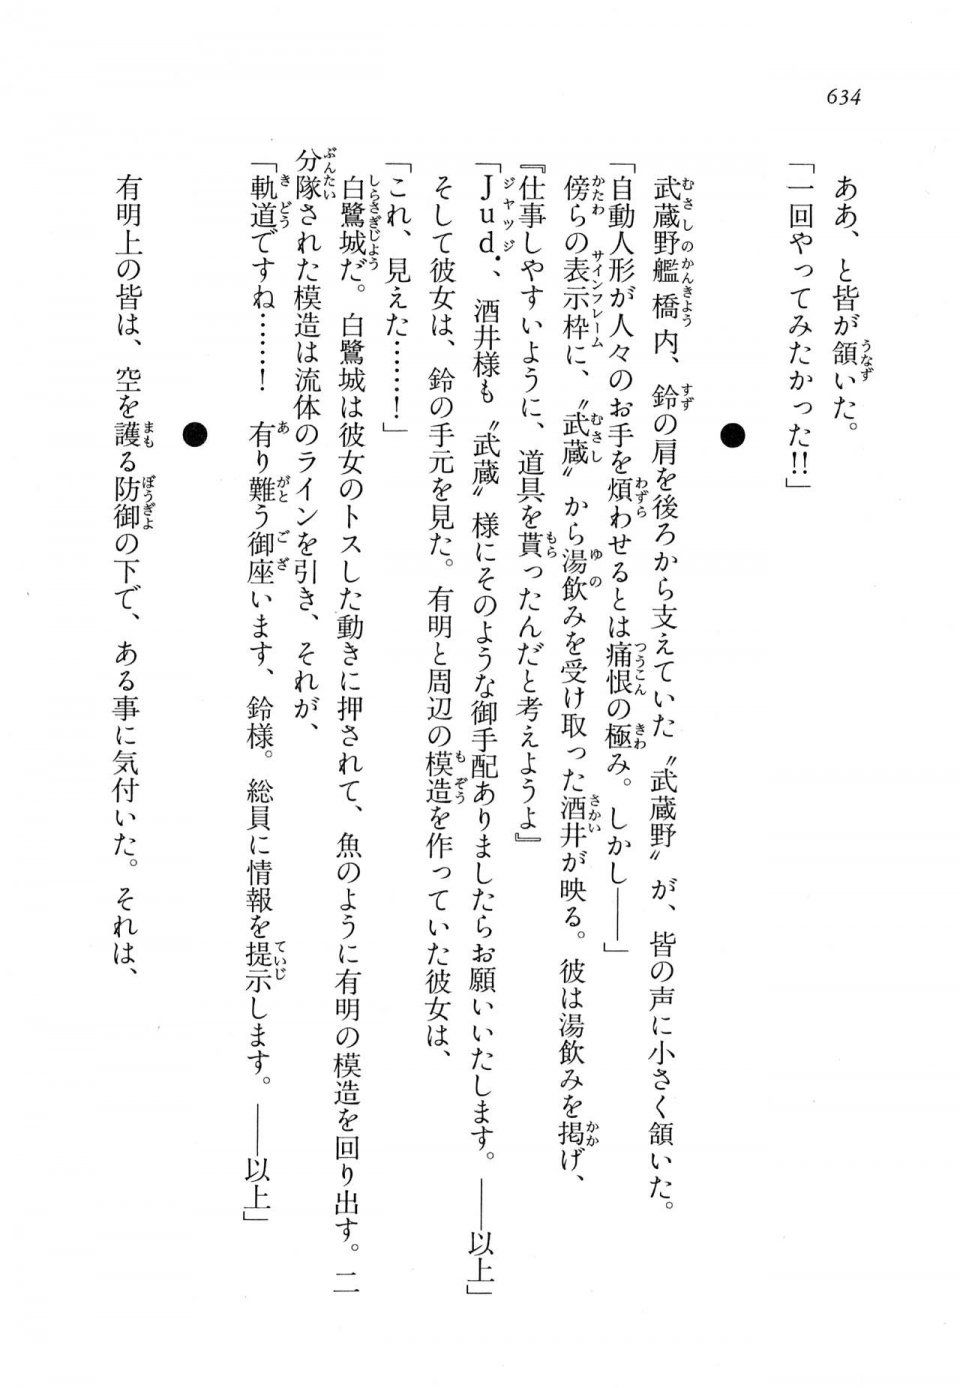 Kyoukai Senjou no Horizon LN Vol 11(5A) - Photo #634